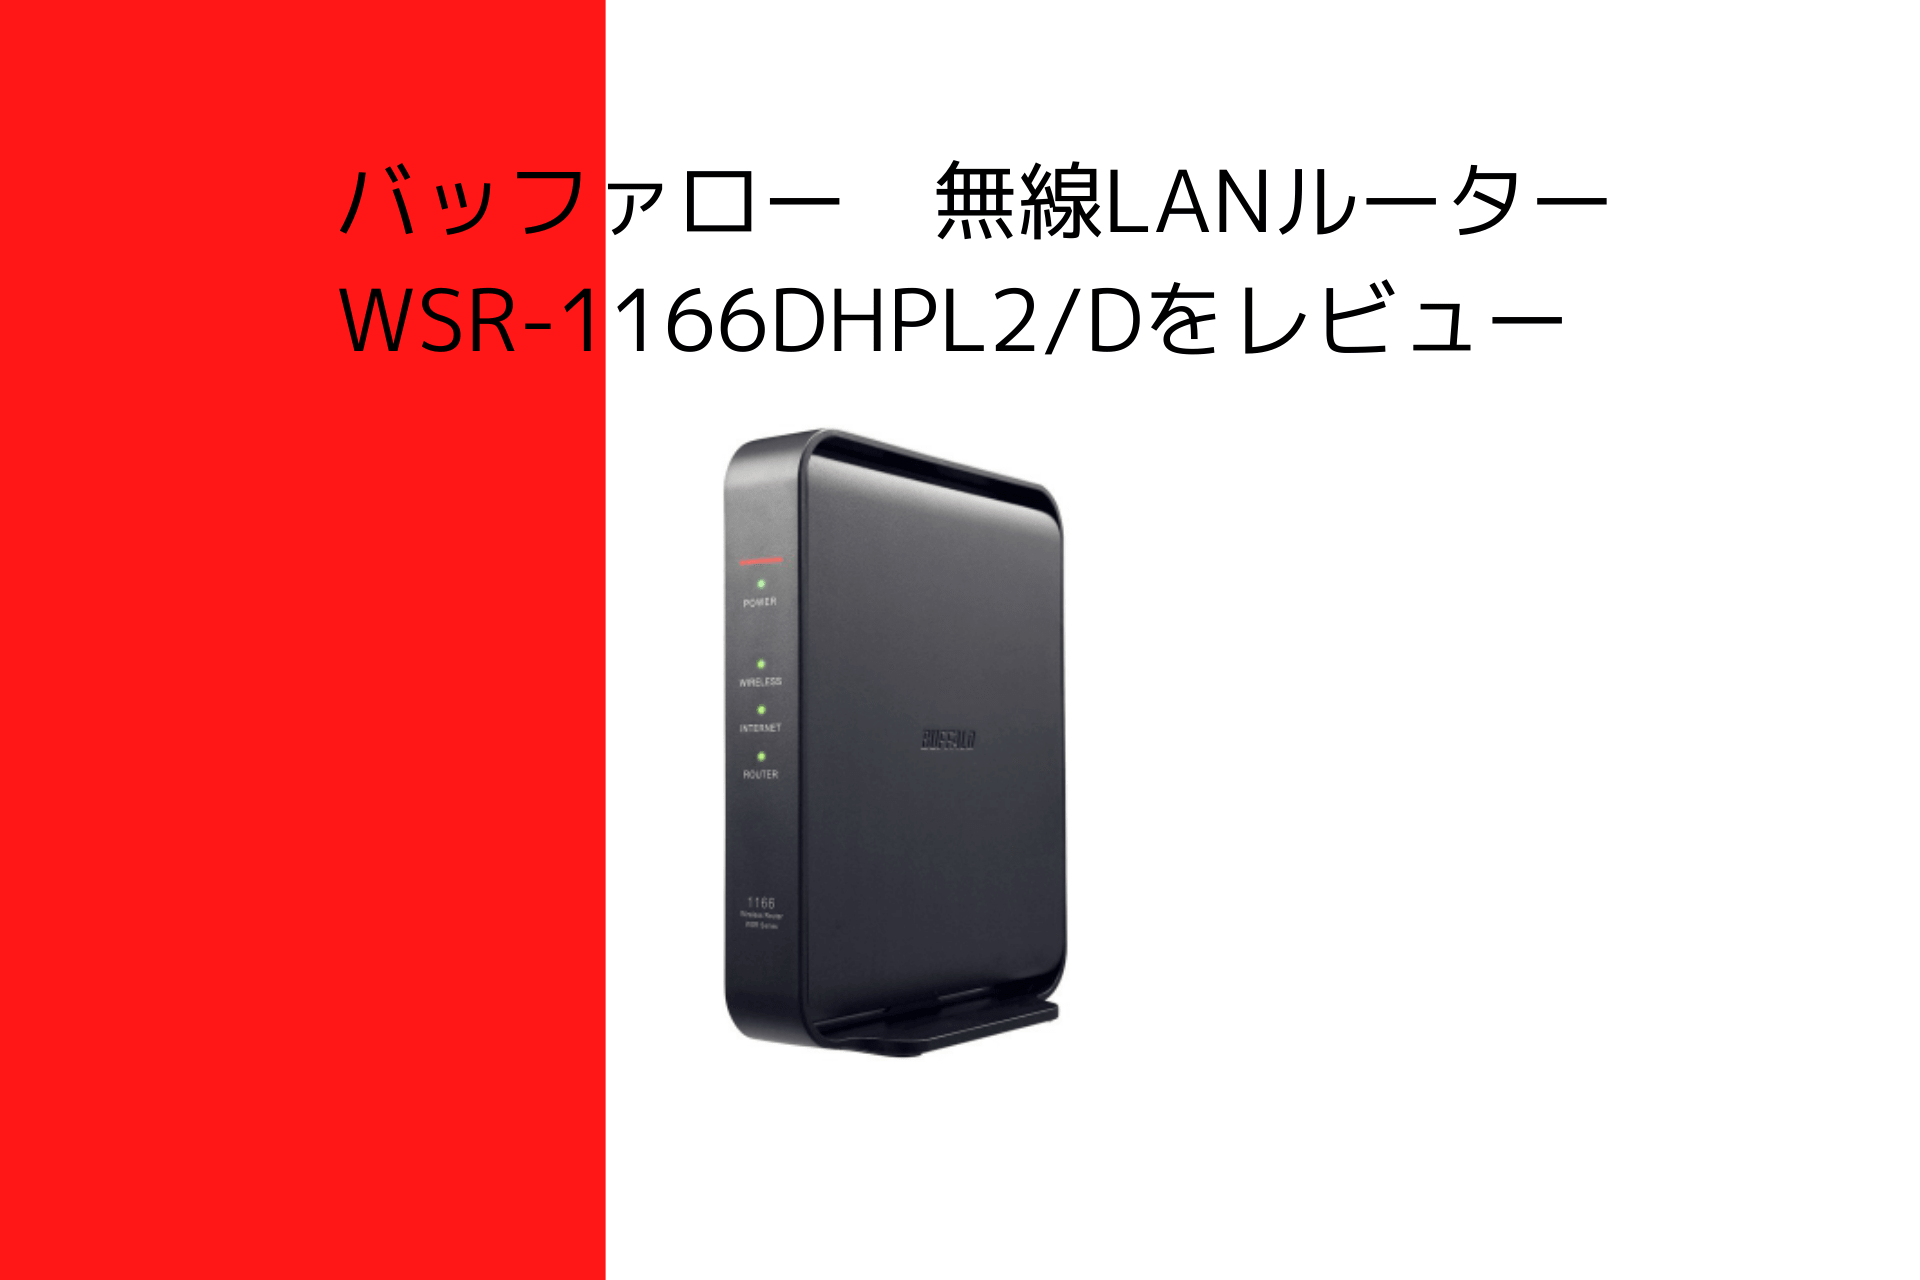 1870円 【正規通販】 BUFFALO WiFi 無線LAN ルーター WSR-1166DHPL2 N 11ac ac1200 866+300Mbps IPv6対応